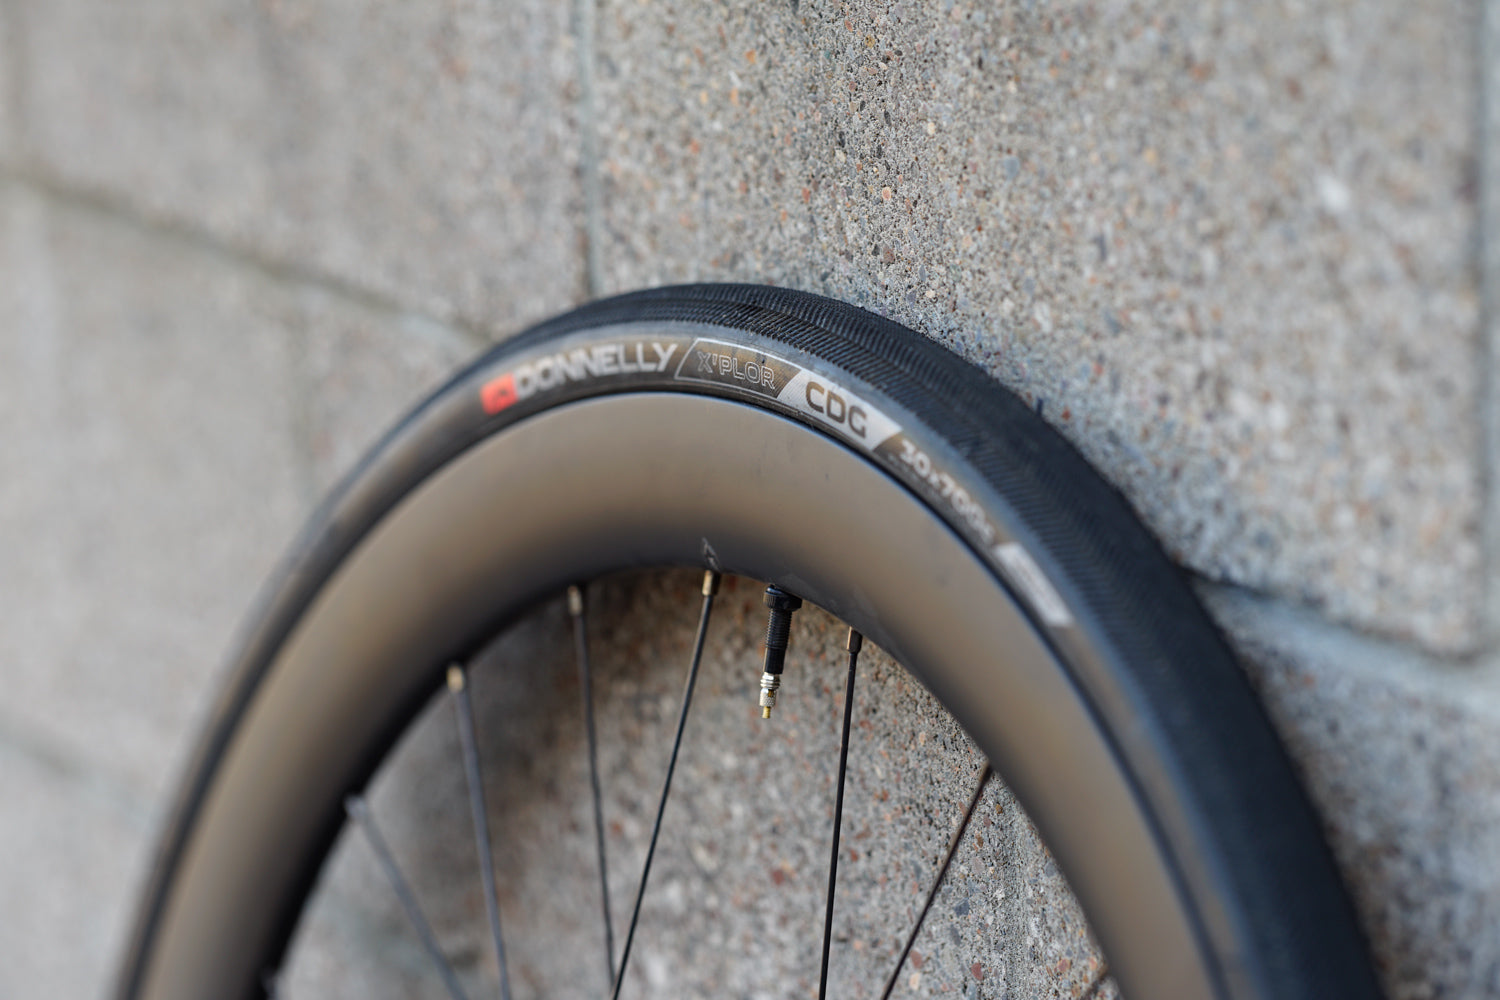 Light Bicycle Rims: For Value-Carbon - AVT.Bike